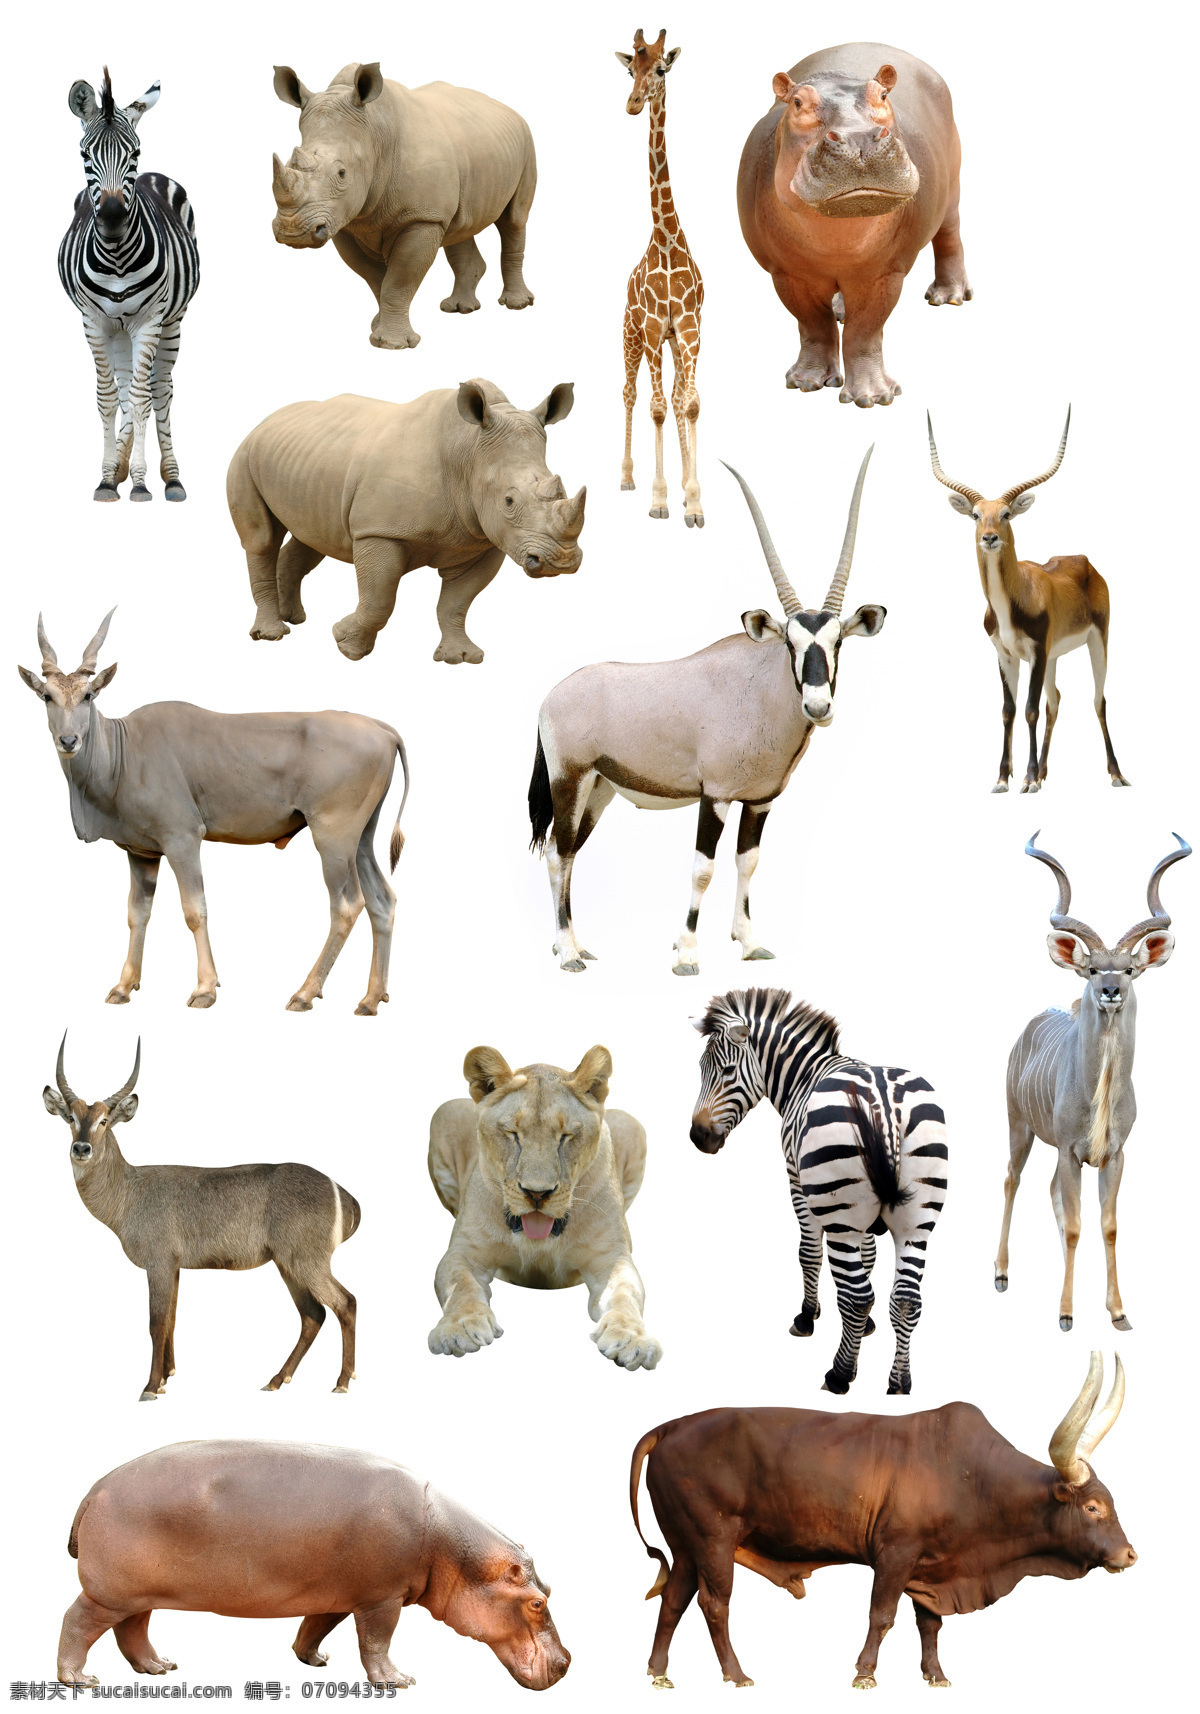 非洲野生动物 非洲动物 狮子 河马 大羚羊 犀牛 斑马 羚羊 野生动物 生物世界